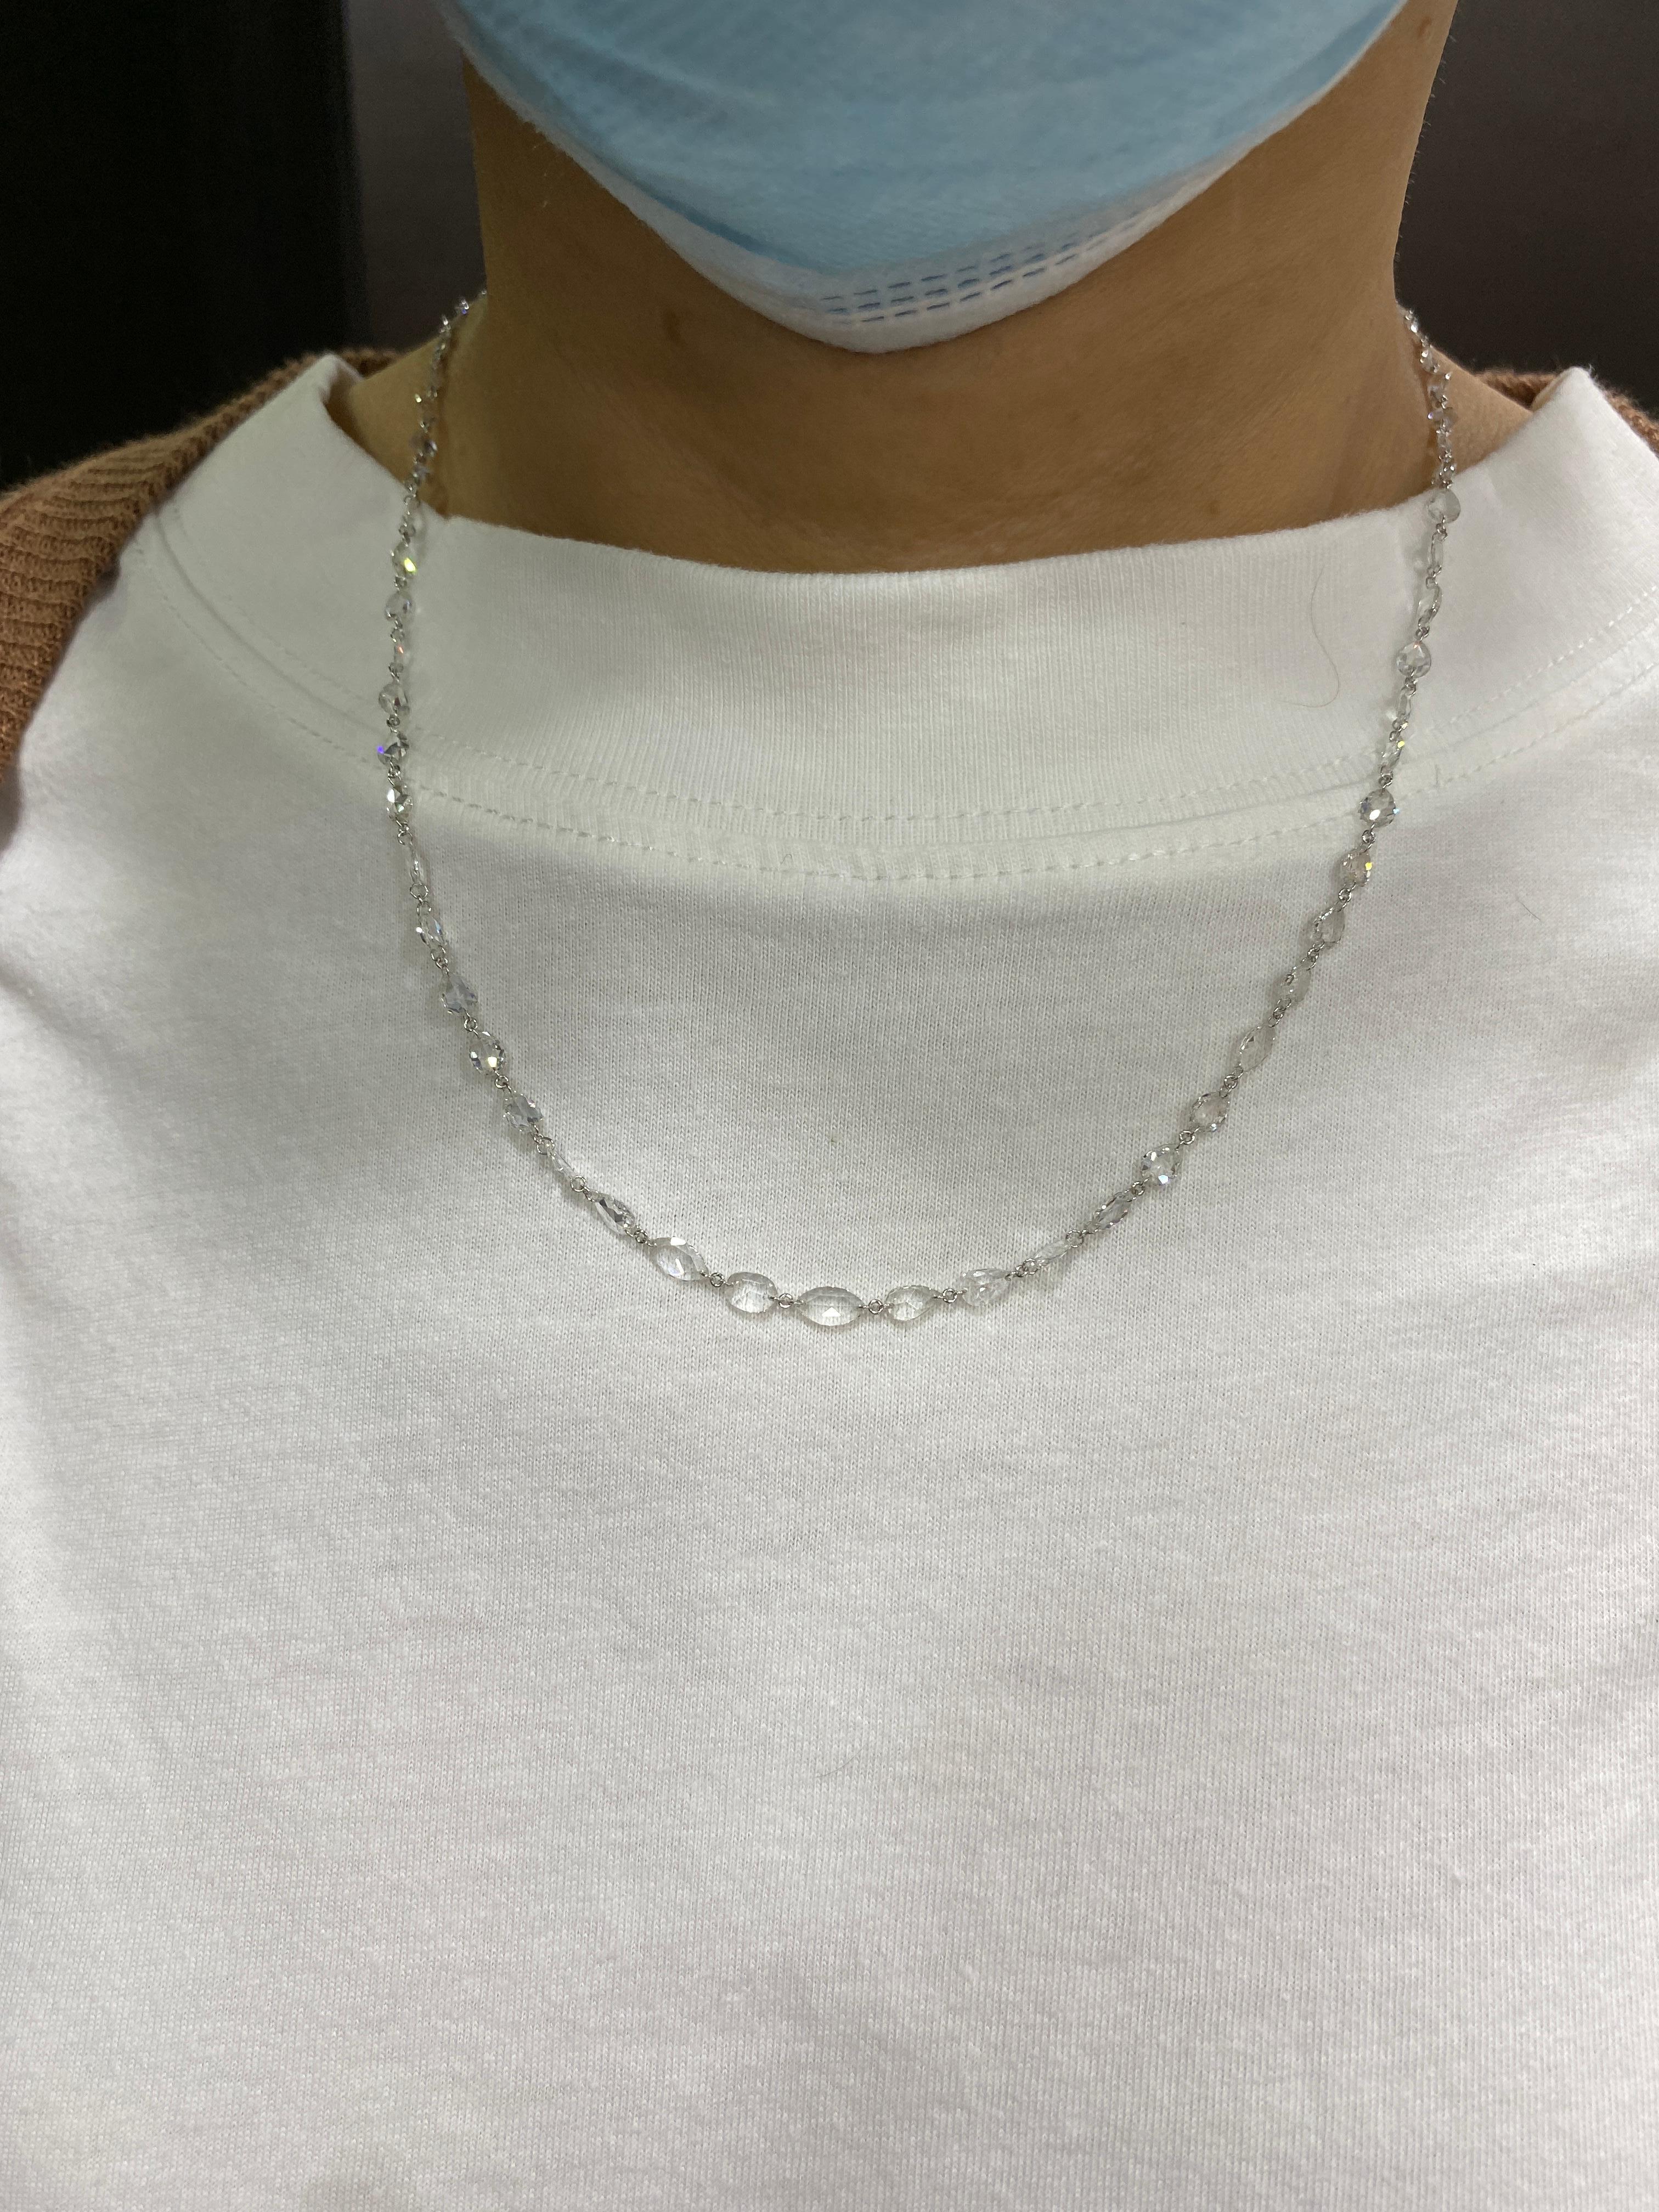 JR 10,03 Karat Weißer Diamant im Rosenschliff Halskette 

Diese Halskette sorgt für einen kompletten Look in sich. Die Schließe ist speziell mit Pave-Diamanten besetzt. Sie kann auch als Lagenkette getragen werden.

Länge der Halskette : 18